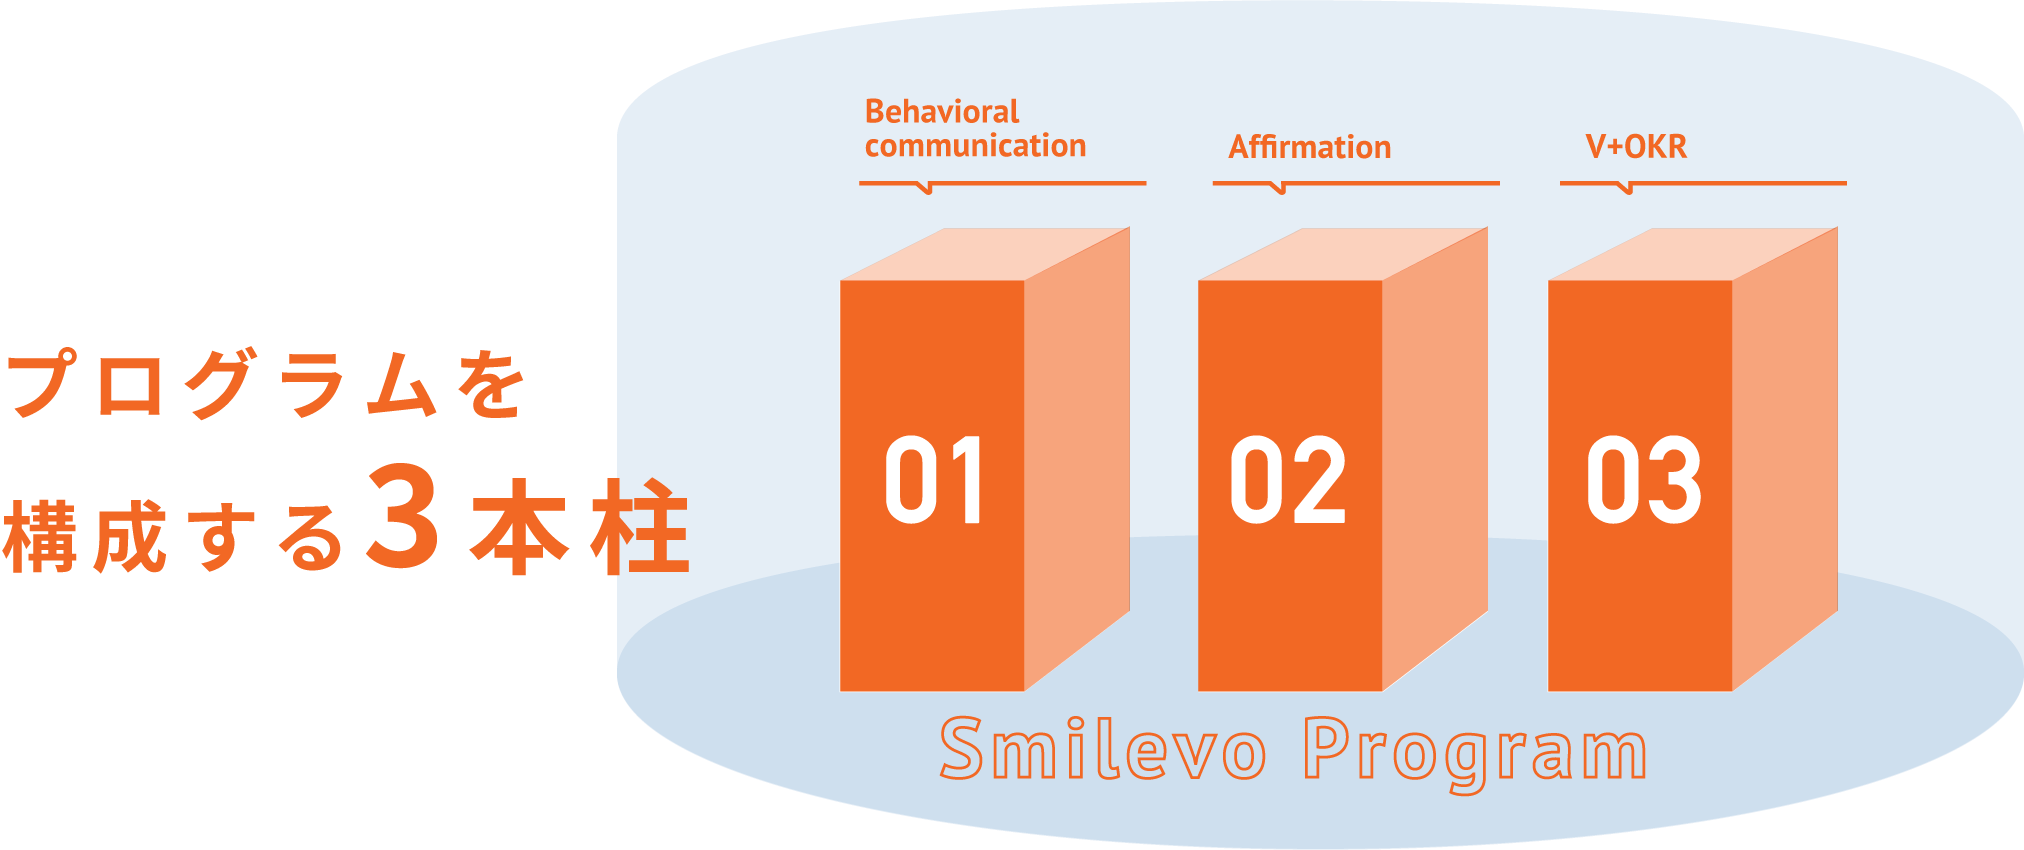 プログラムを構成する3本柱 BehavioralcommunicationAfﬁrmationV+OKR 010203 Smilevo Program